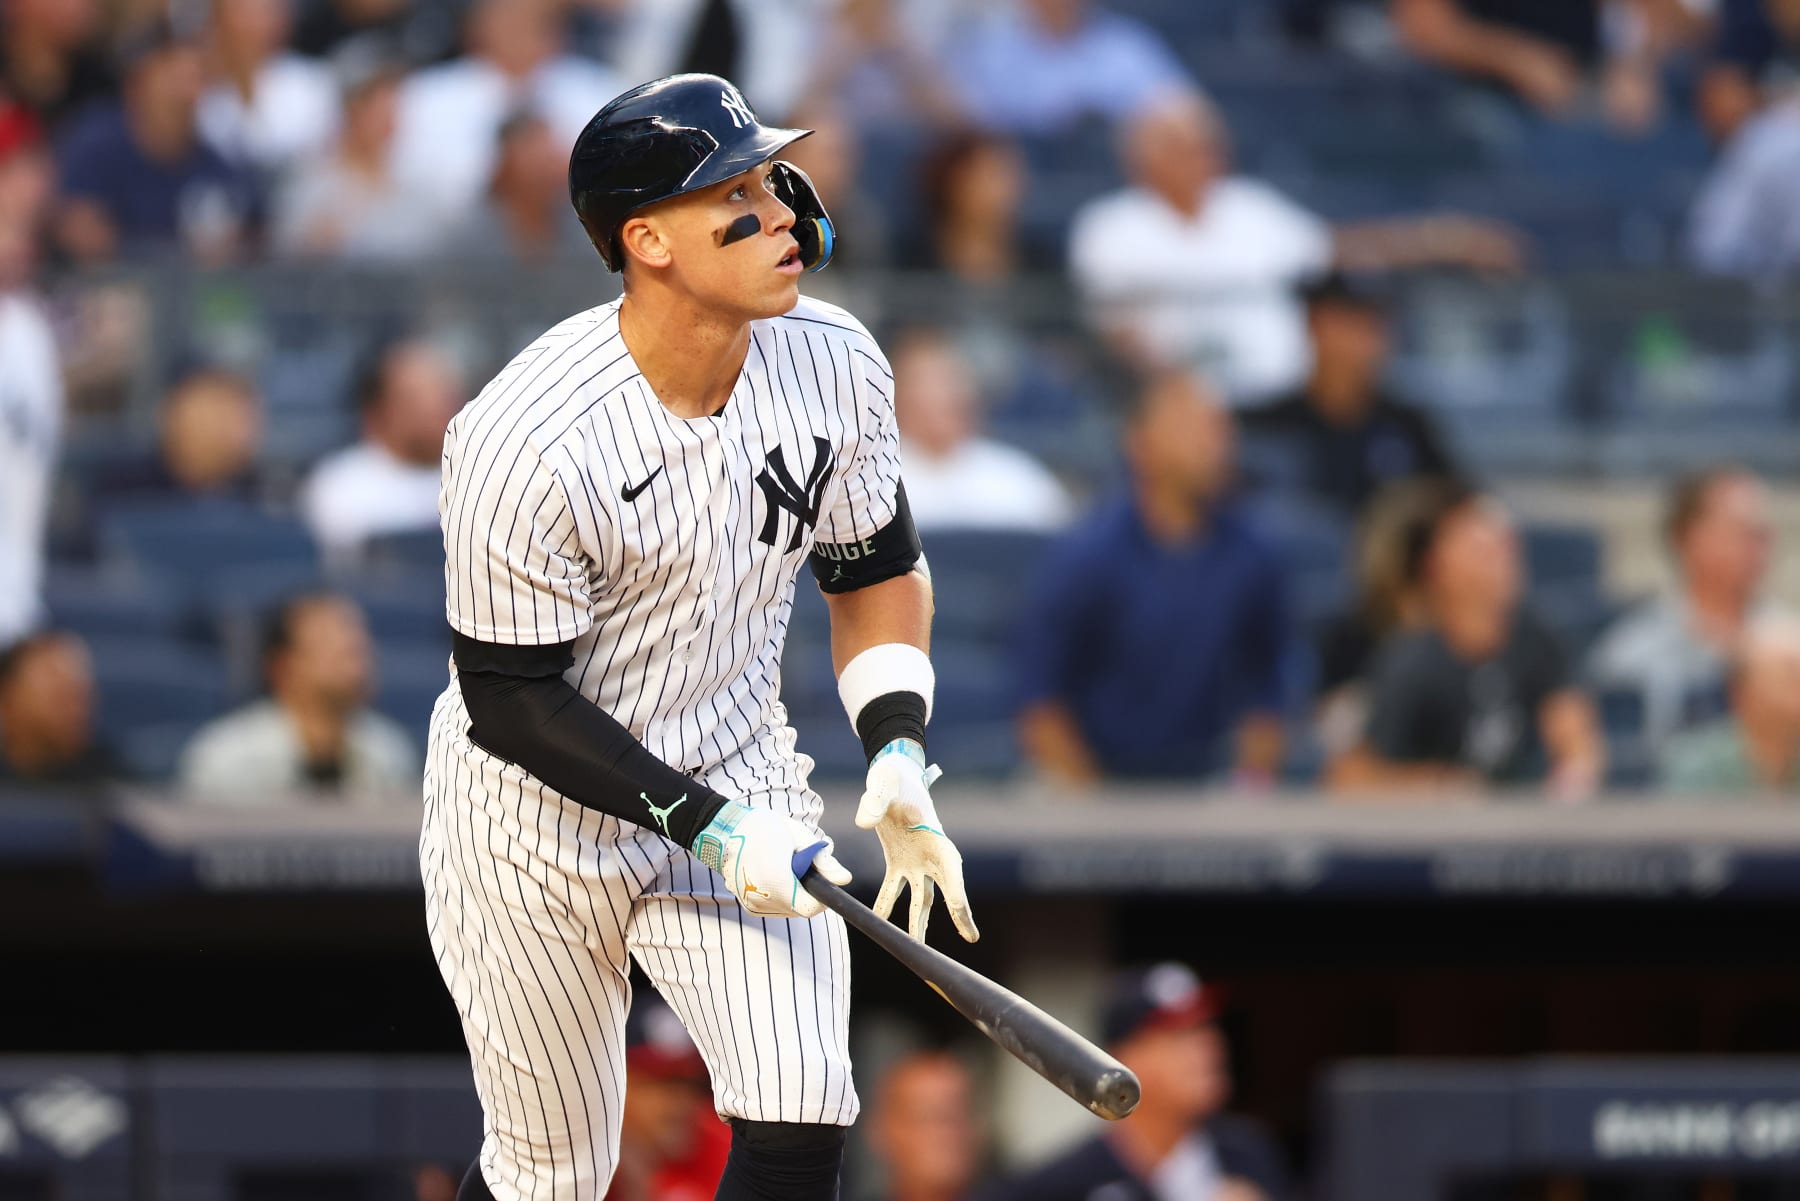 Aaron Judge's player edition Jordan cleats get mocked amidst Yankees'  nine-game losing streak